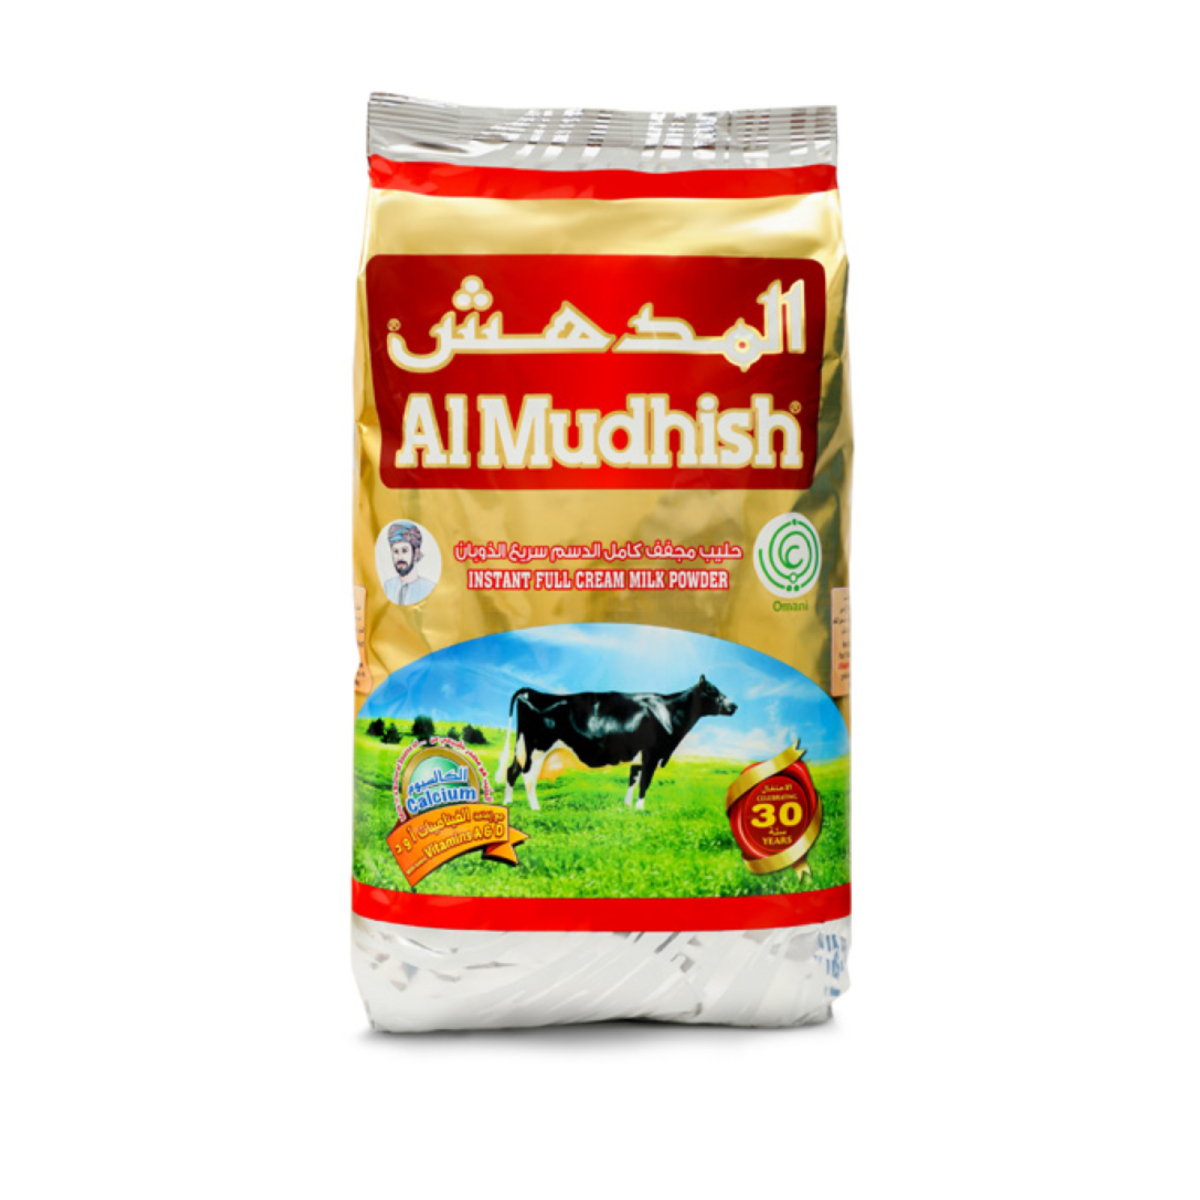 Al Mudhish Instant Full Cream Milk Powder 1.8 kg